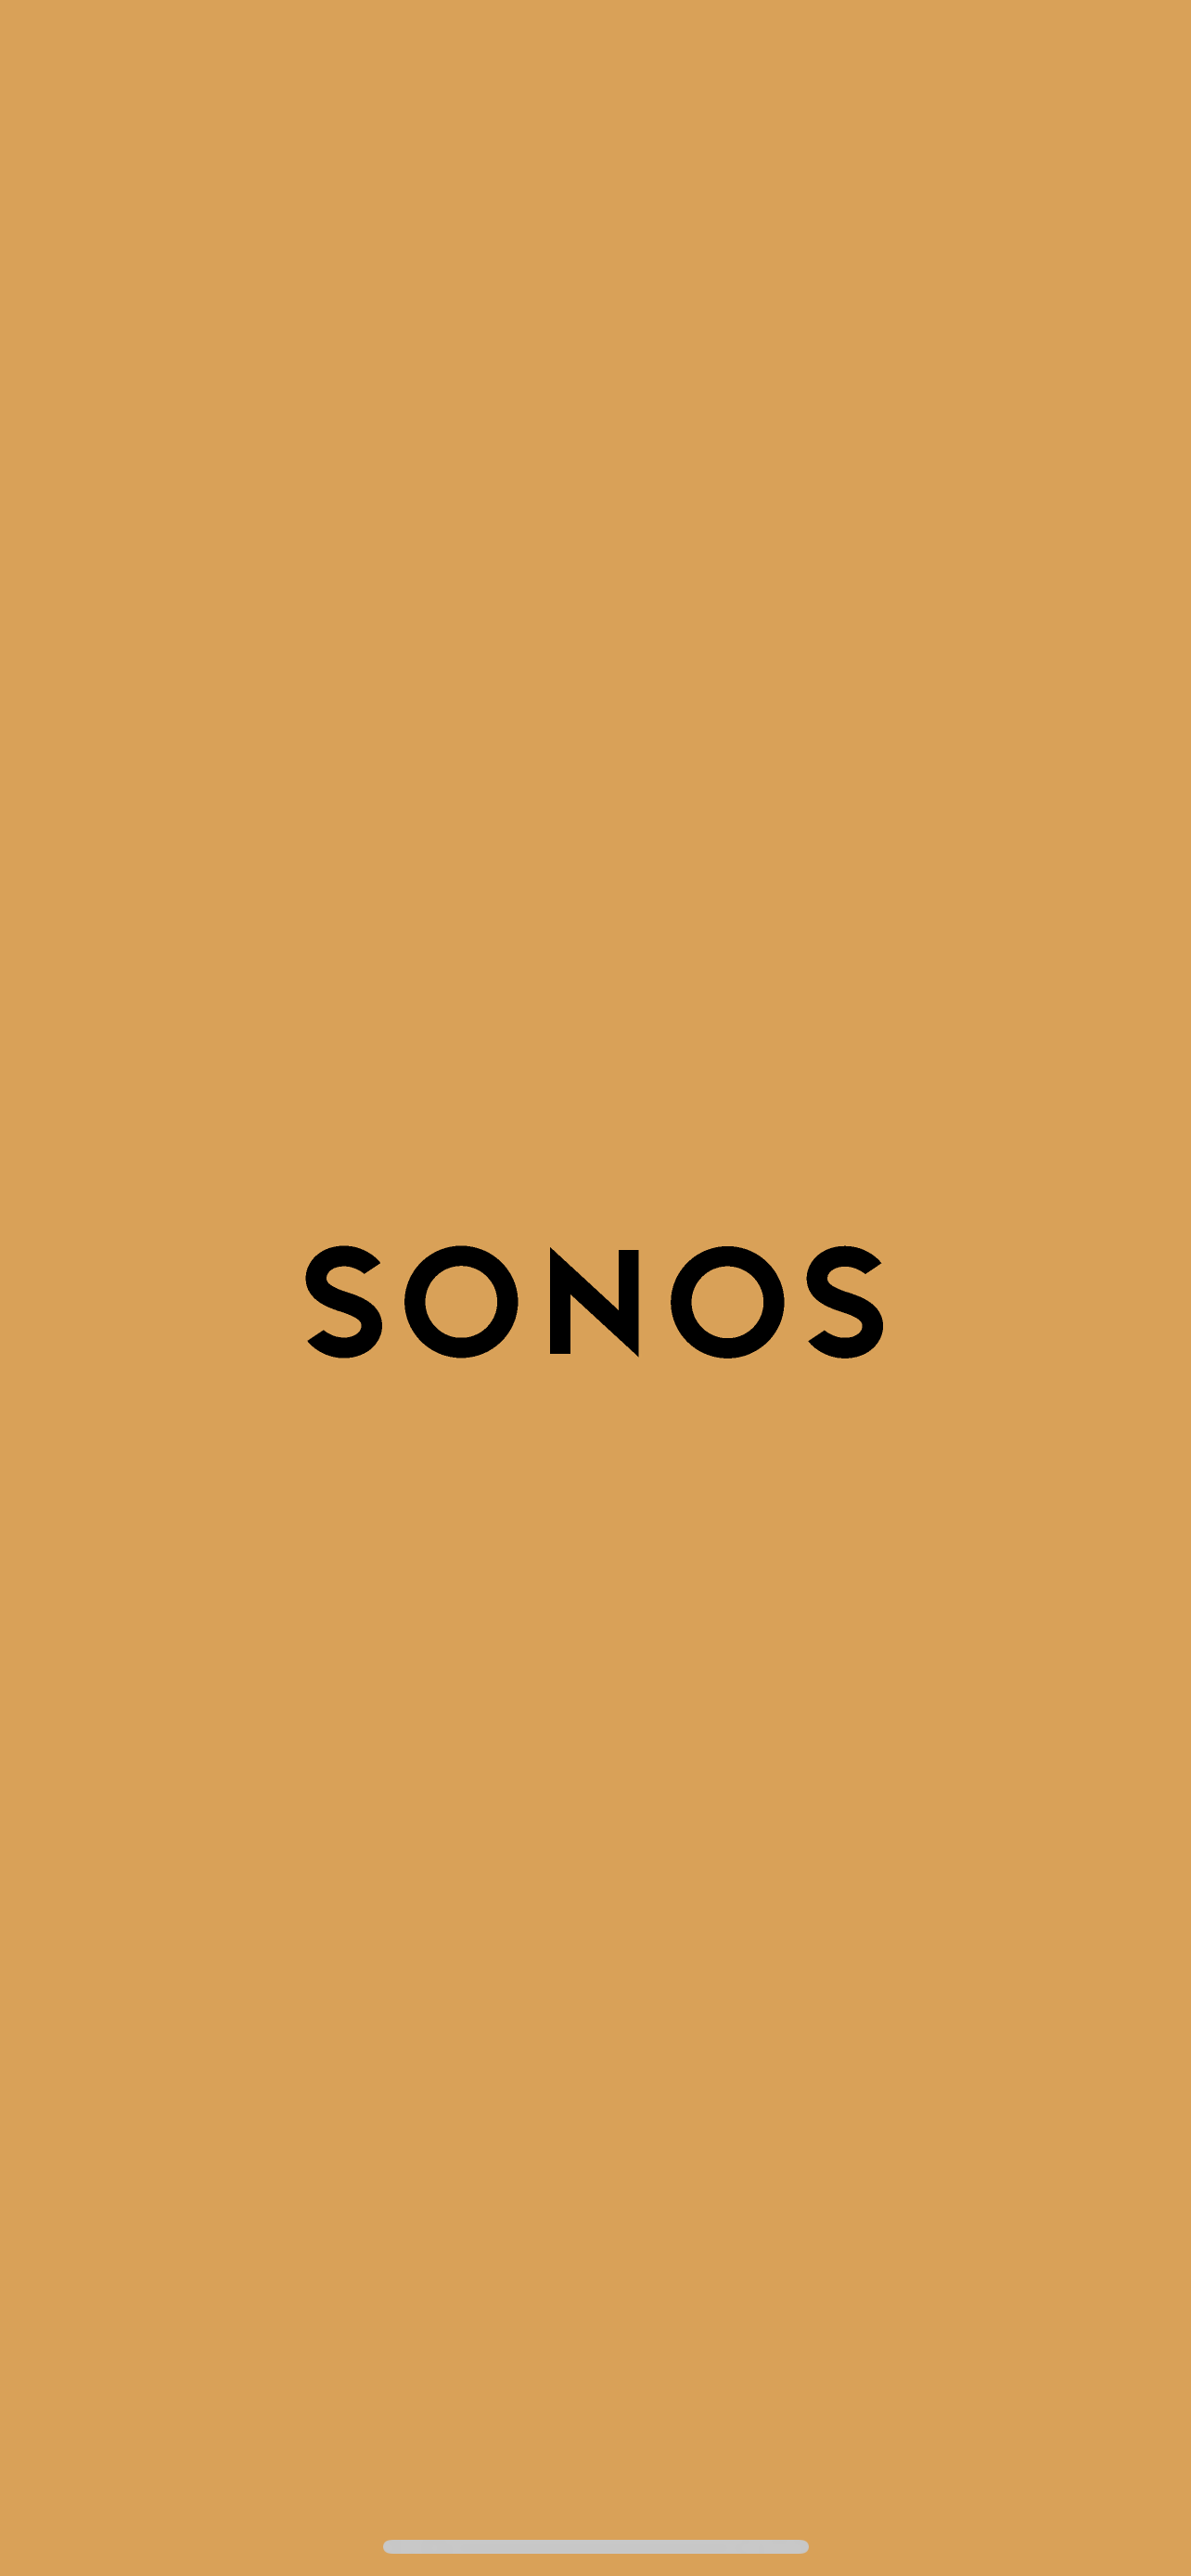 sonos app open | Sonos Community